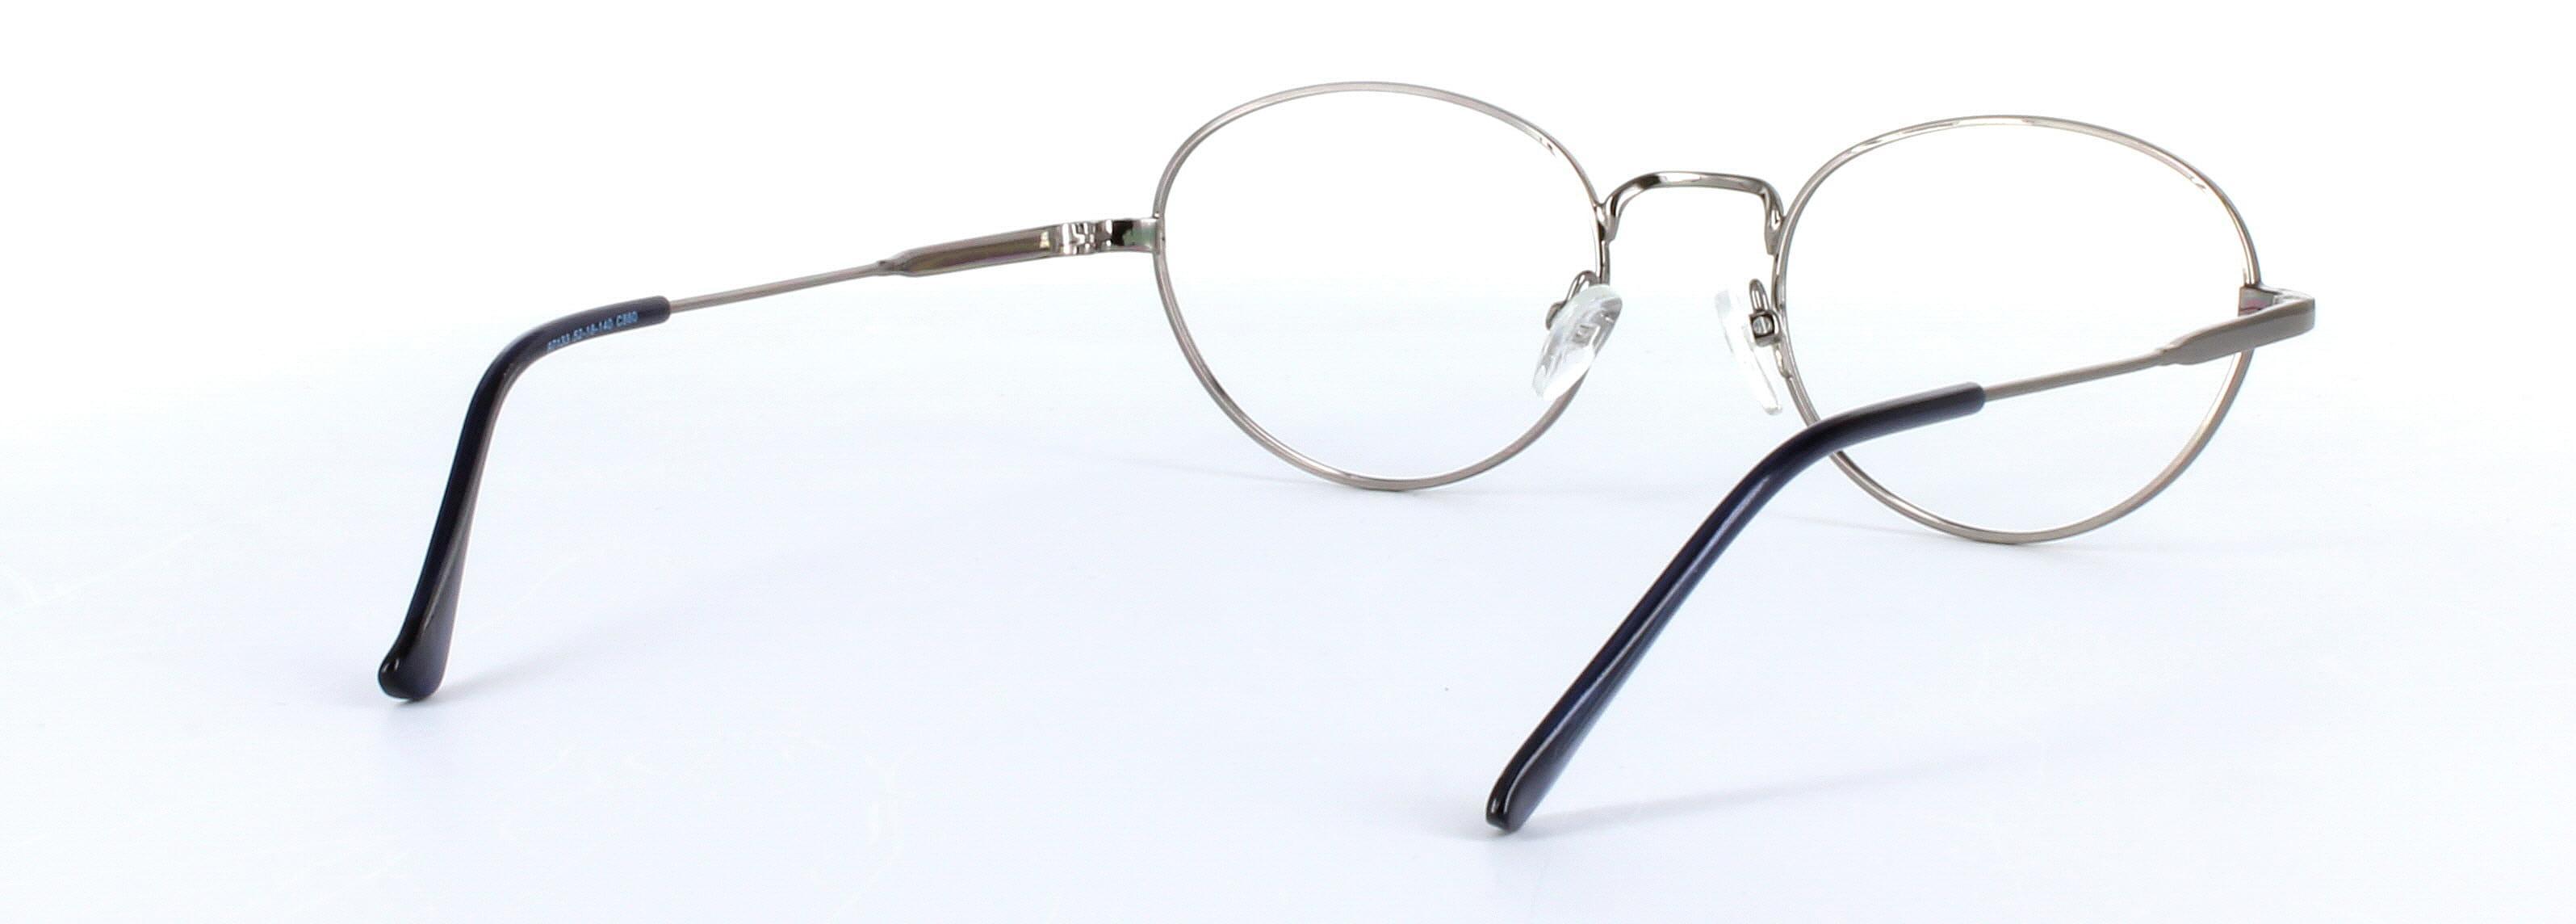 Esperanza Silver Full Rim Oval Metal Glasses - Image View 4